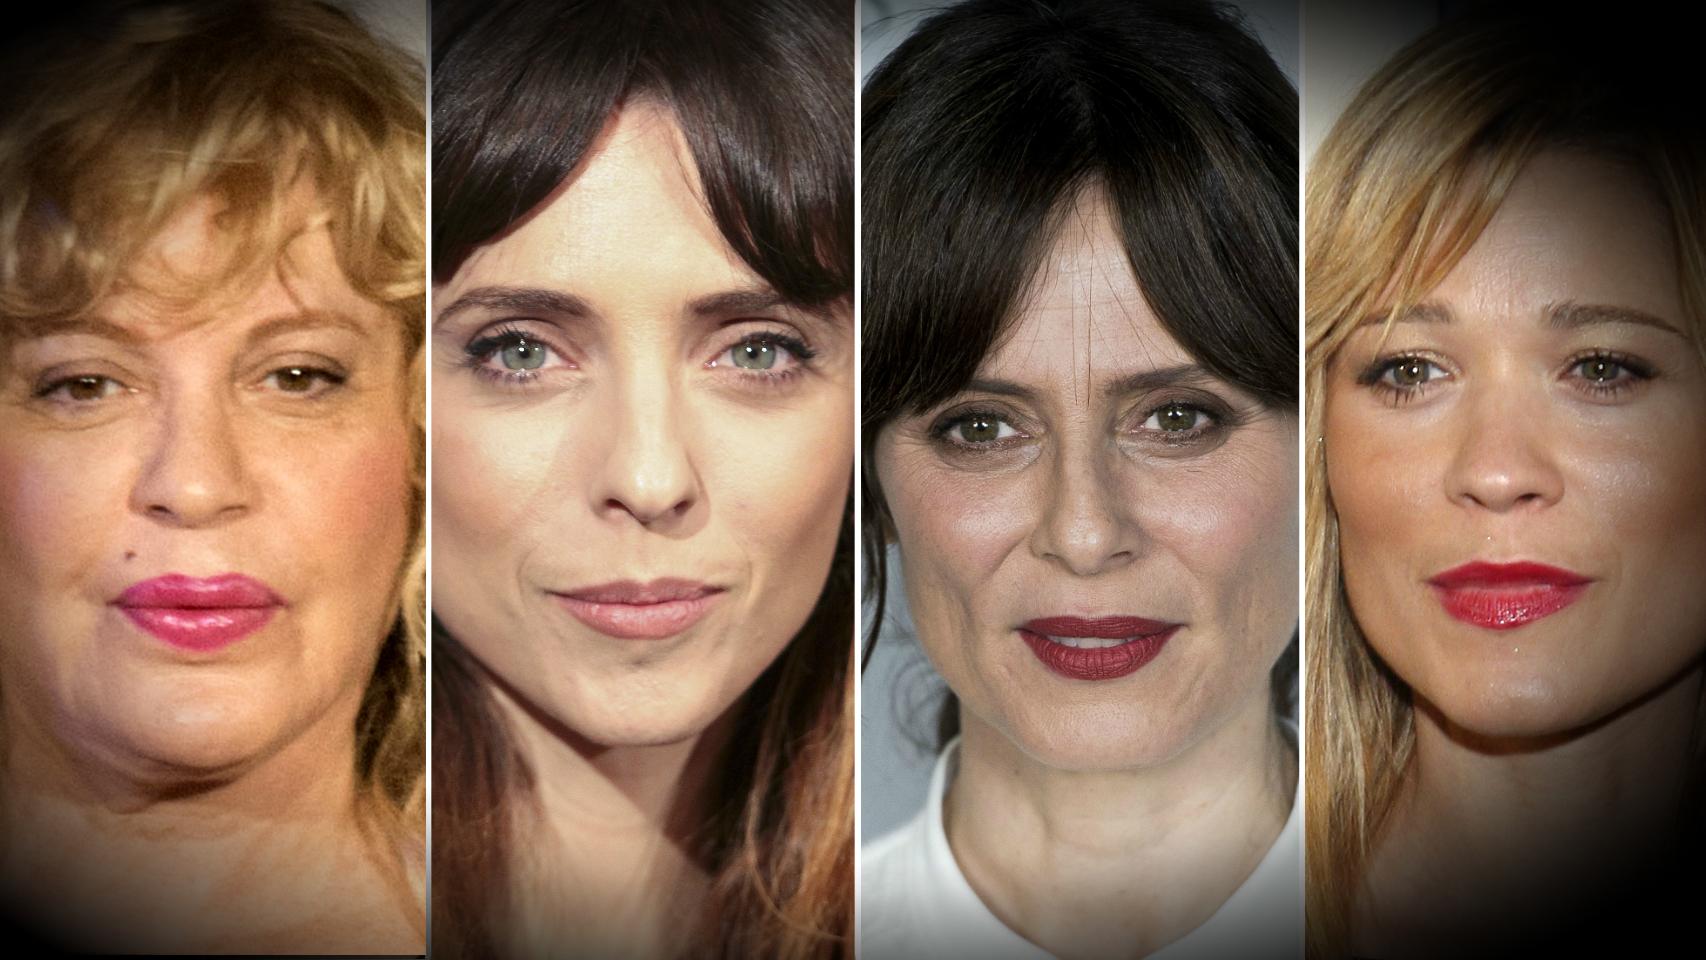 El acoso sexual llega al cine español estas son las actrices que lo denuncian foto imagen